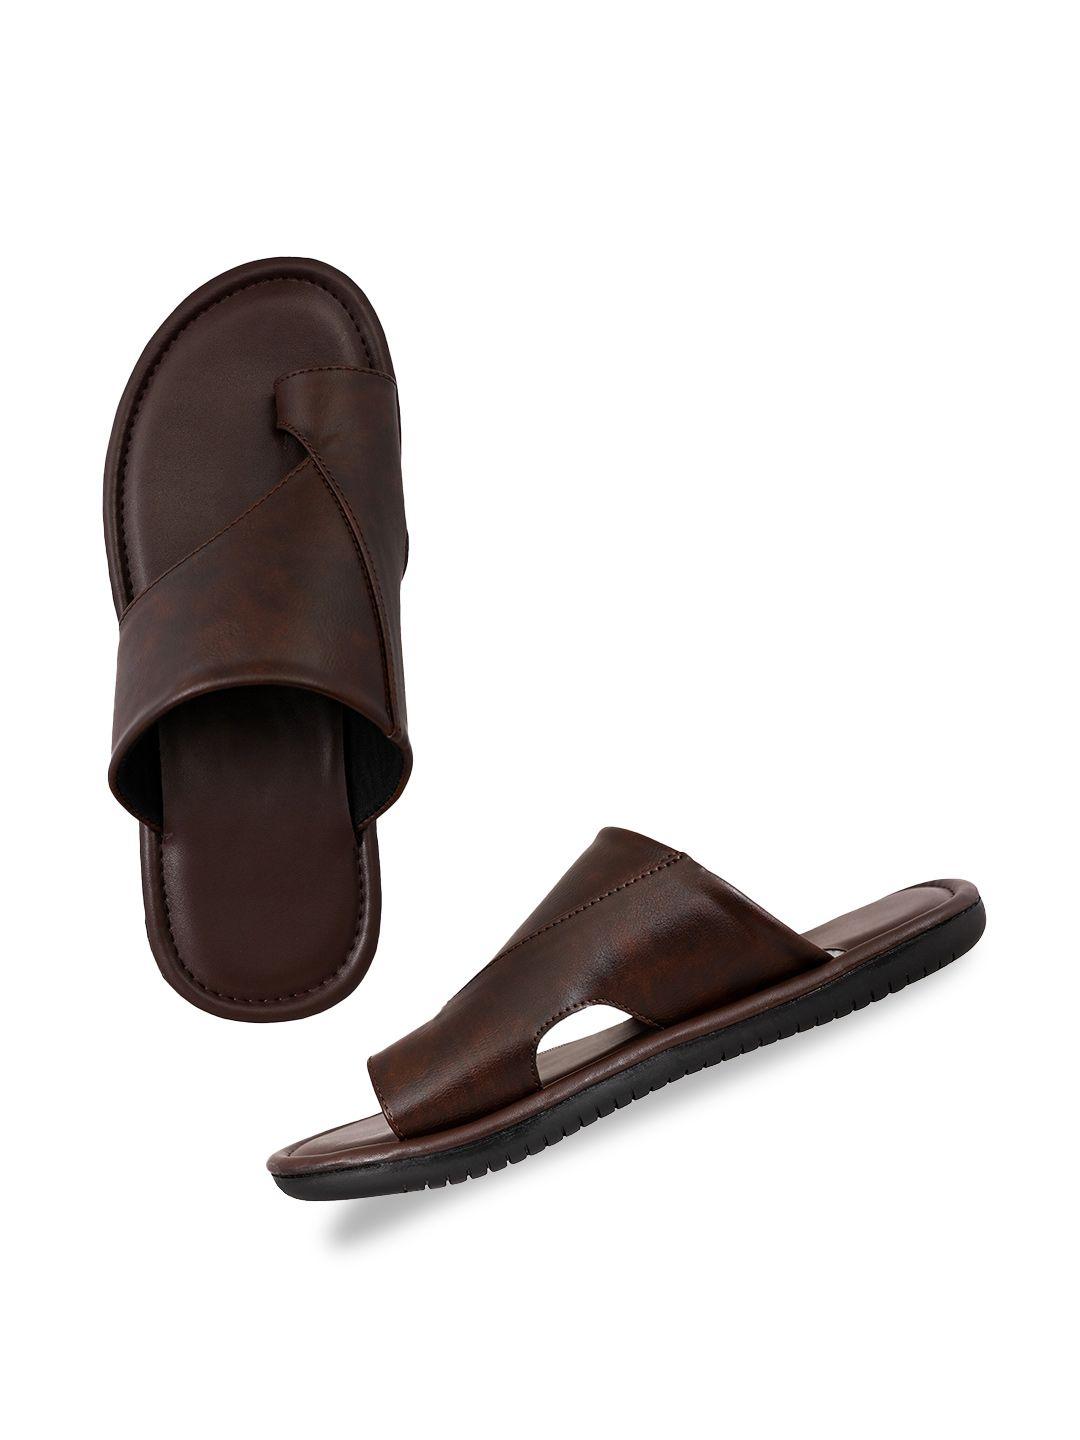 aristitch men leather comfort sandals